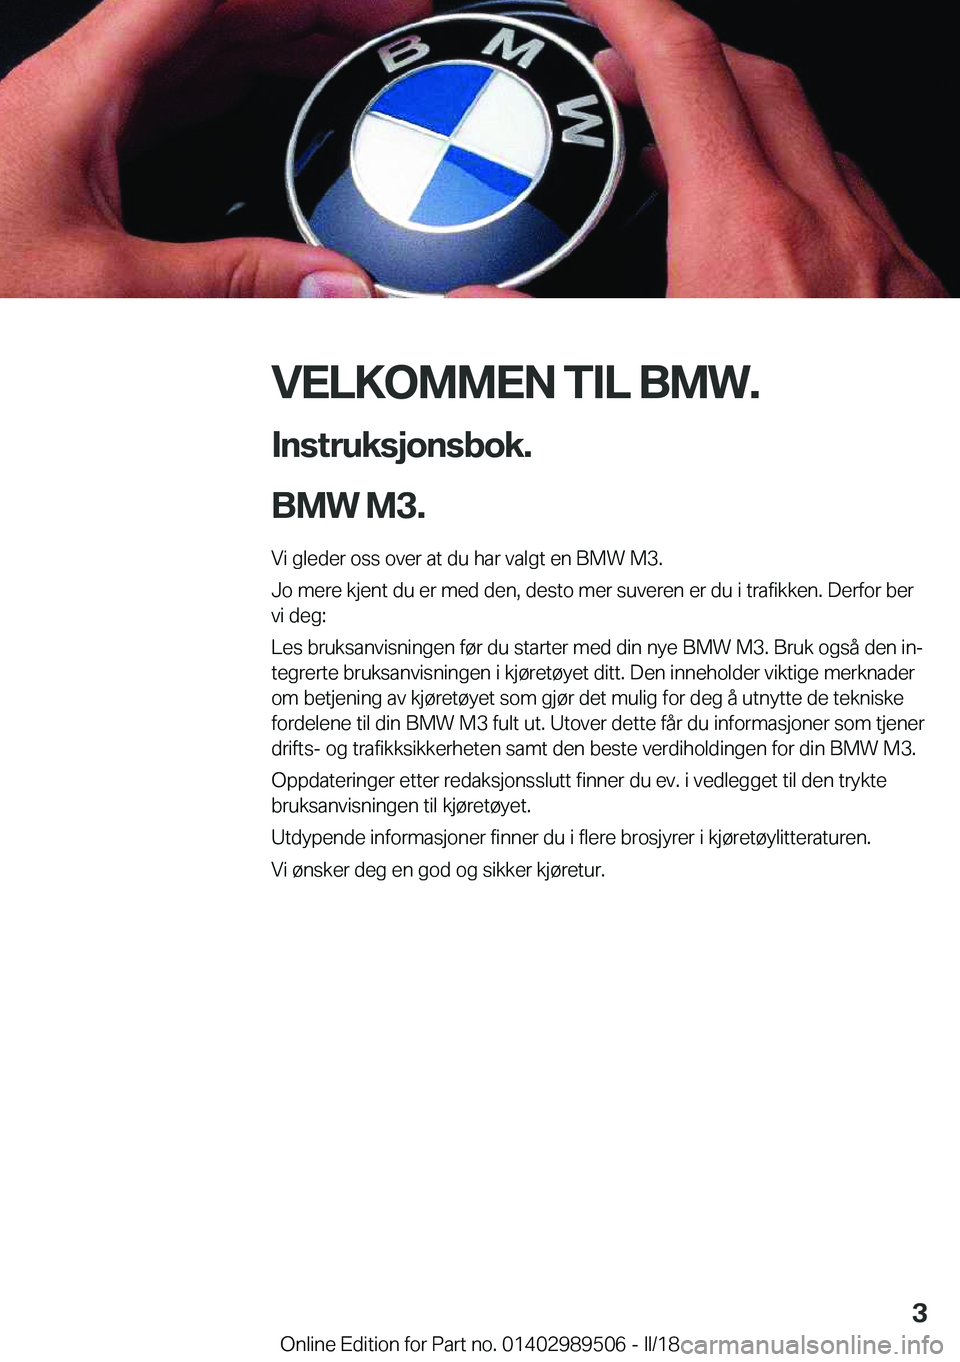 BMW M3 2018  InstruksjonsbØker (in Norwegian) �V�E�L�K�O�M�M�E�N��T�I�L��B�M�W�.�I�n�s�t�r�u�k�s�j�o�n�s�b�o�k�.
�B�M�W��M�3�.
�V�i� �g�l�e�d�e�r� �o�s�s� �o�v�e�r� �a�t� �d�u� �h�a�r� �v�a�l�g�t� �e�n� �B�M�W� �M�3�. �J�o� �m�e�r�e� �k�j�e�n�